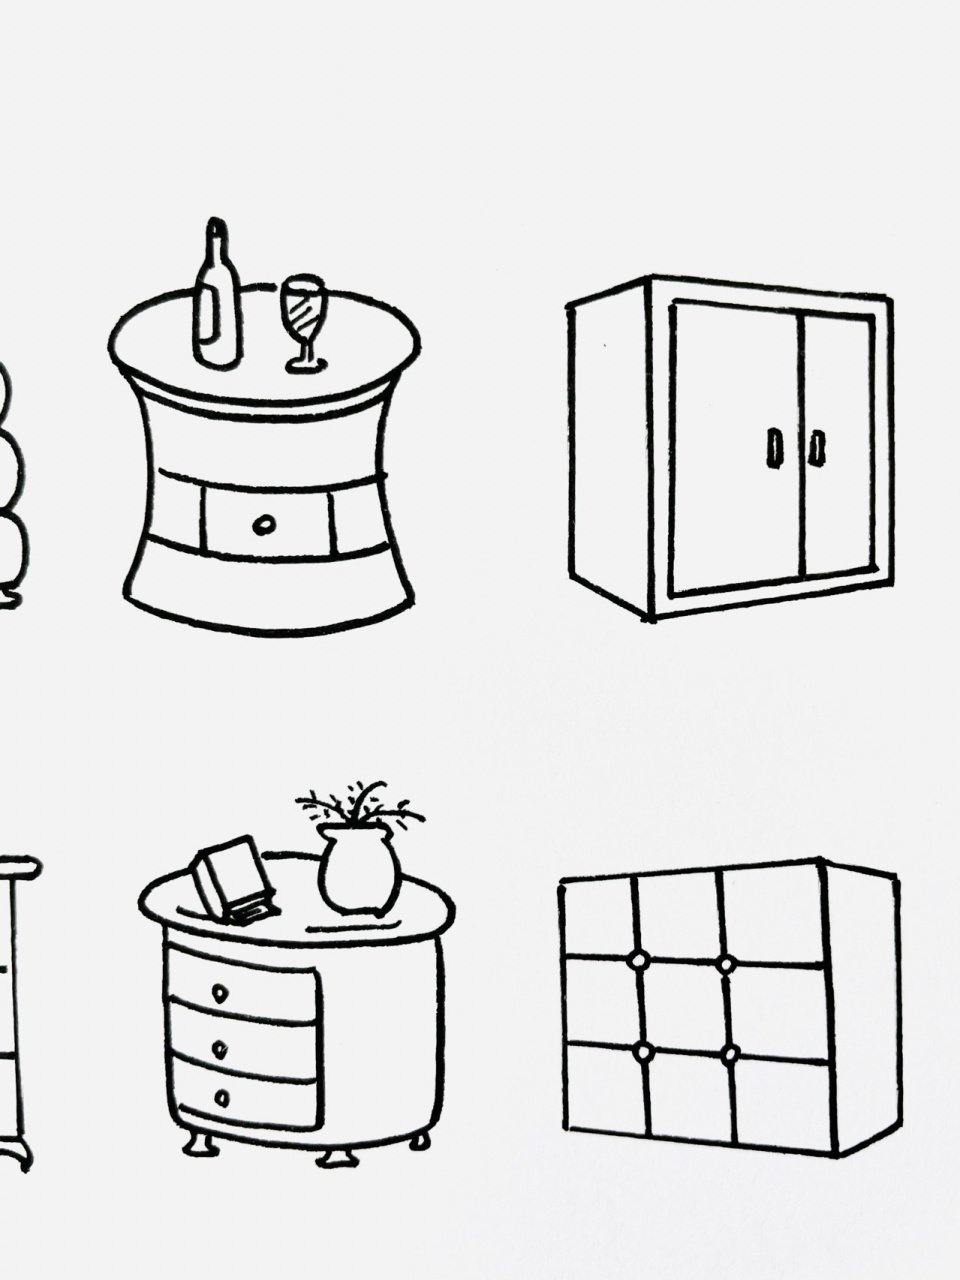 【简笔画】柜子96 分享一组家具简笔画—柜子 方的,圆的,高的,矮的